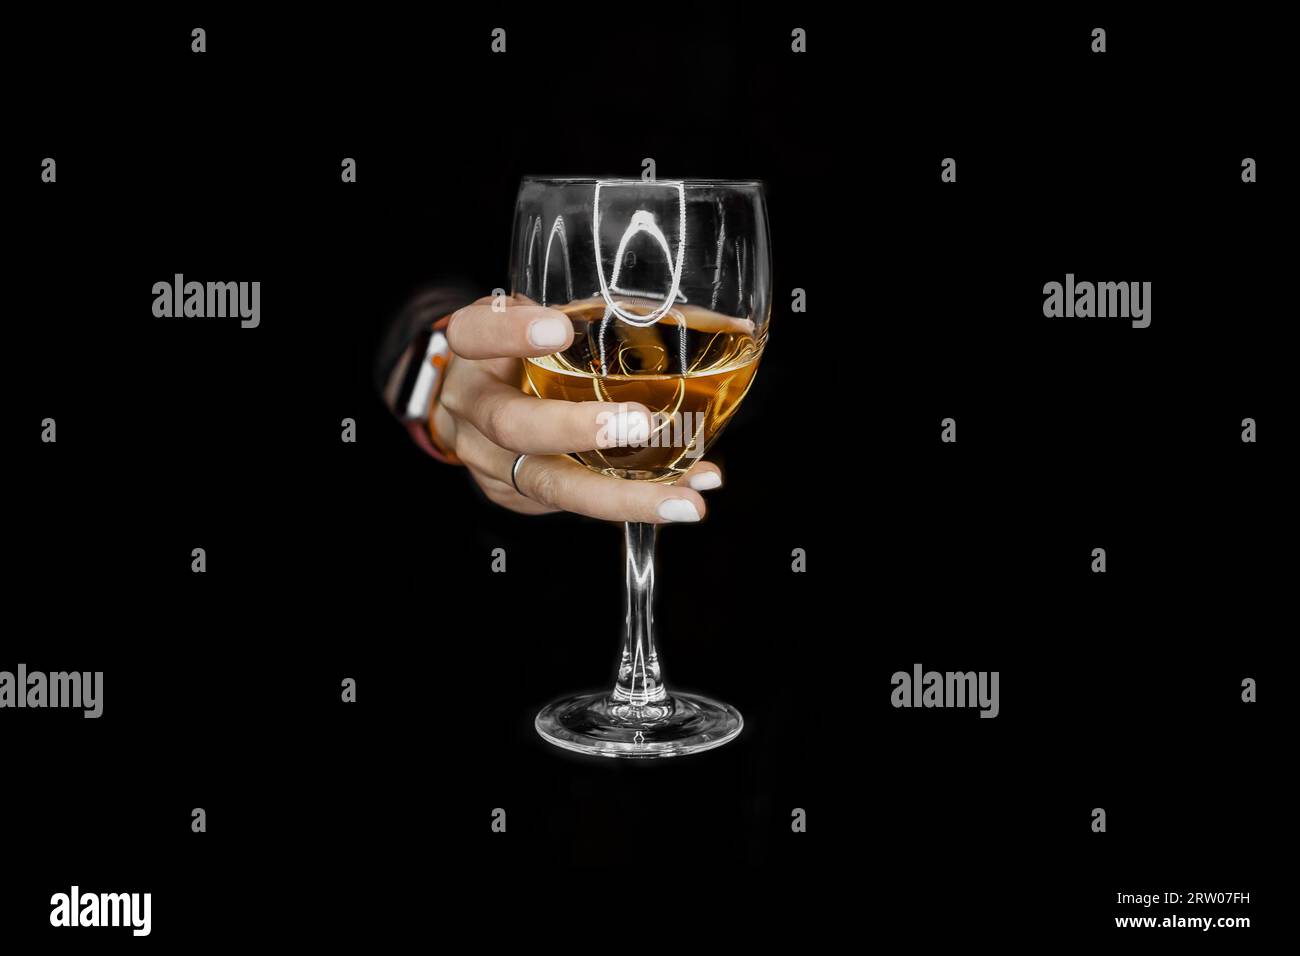 La main d'une femme tient ou tient un verre de boisson alcoolisée de l'obscurité. Banque D'Images